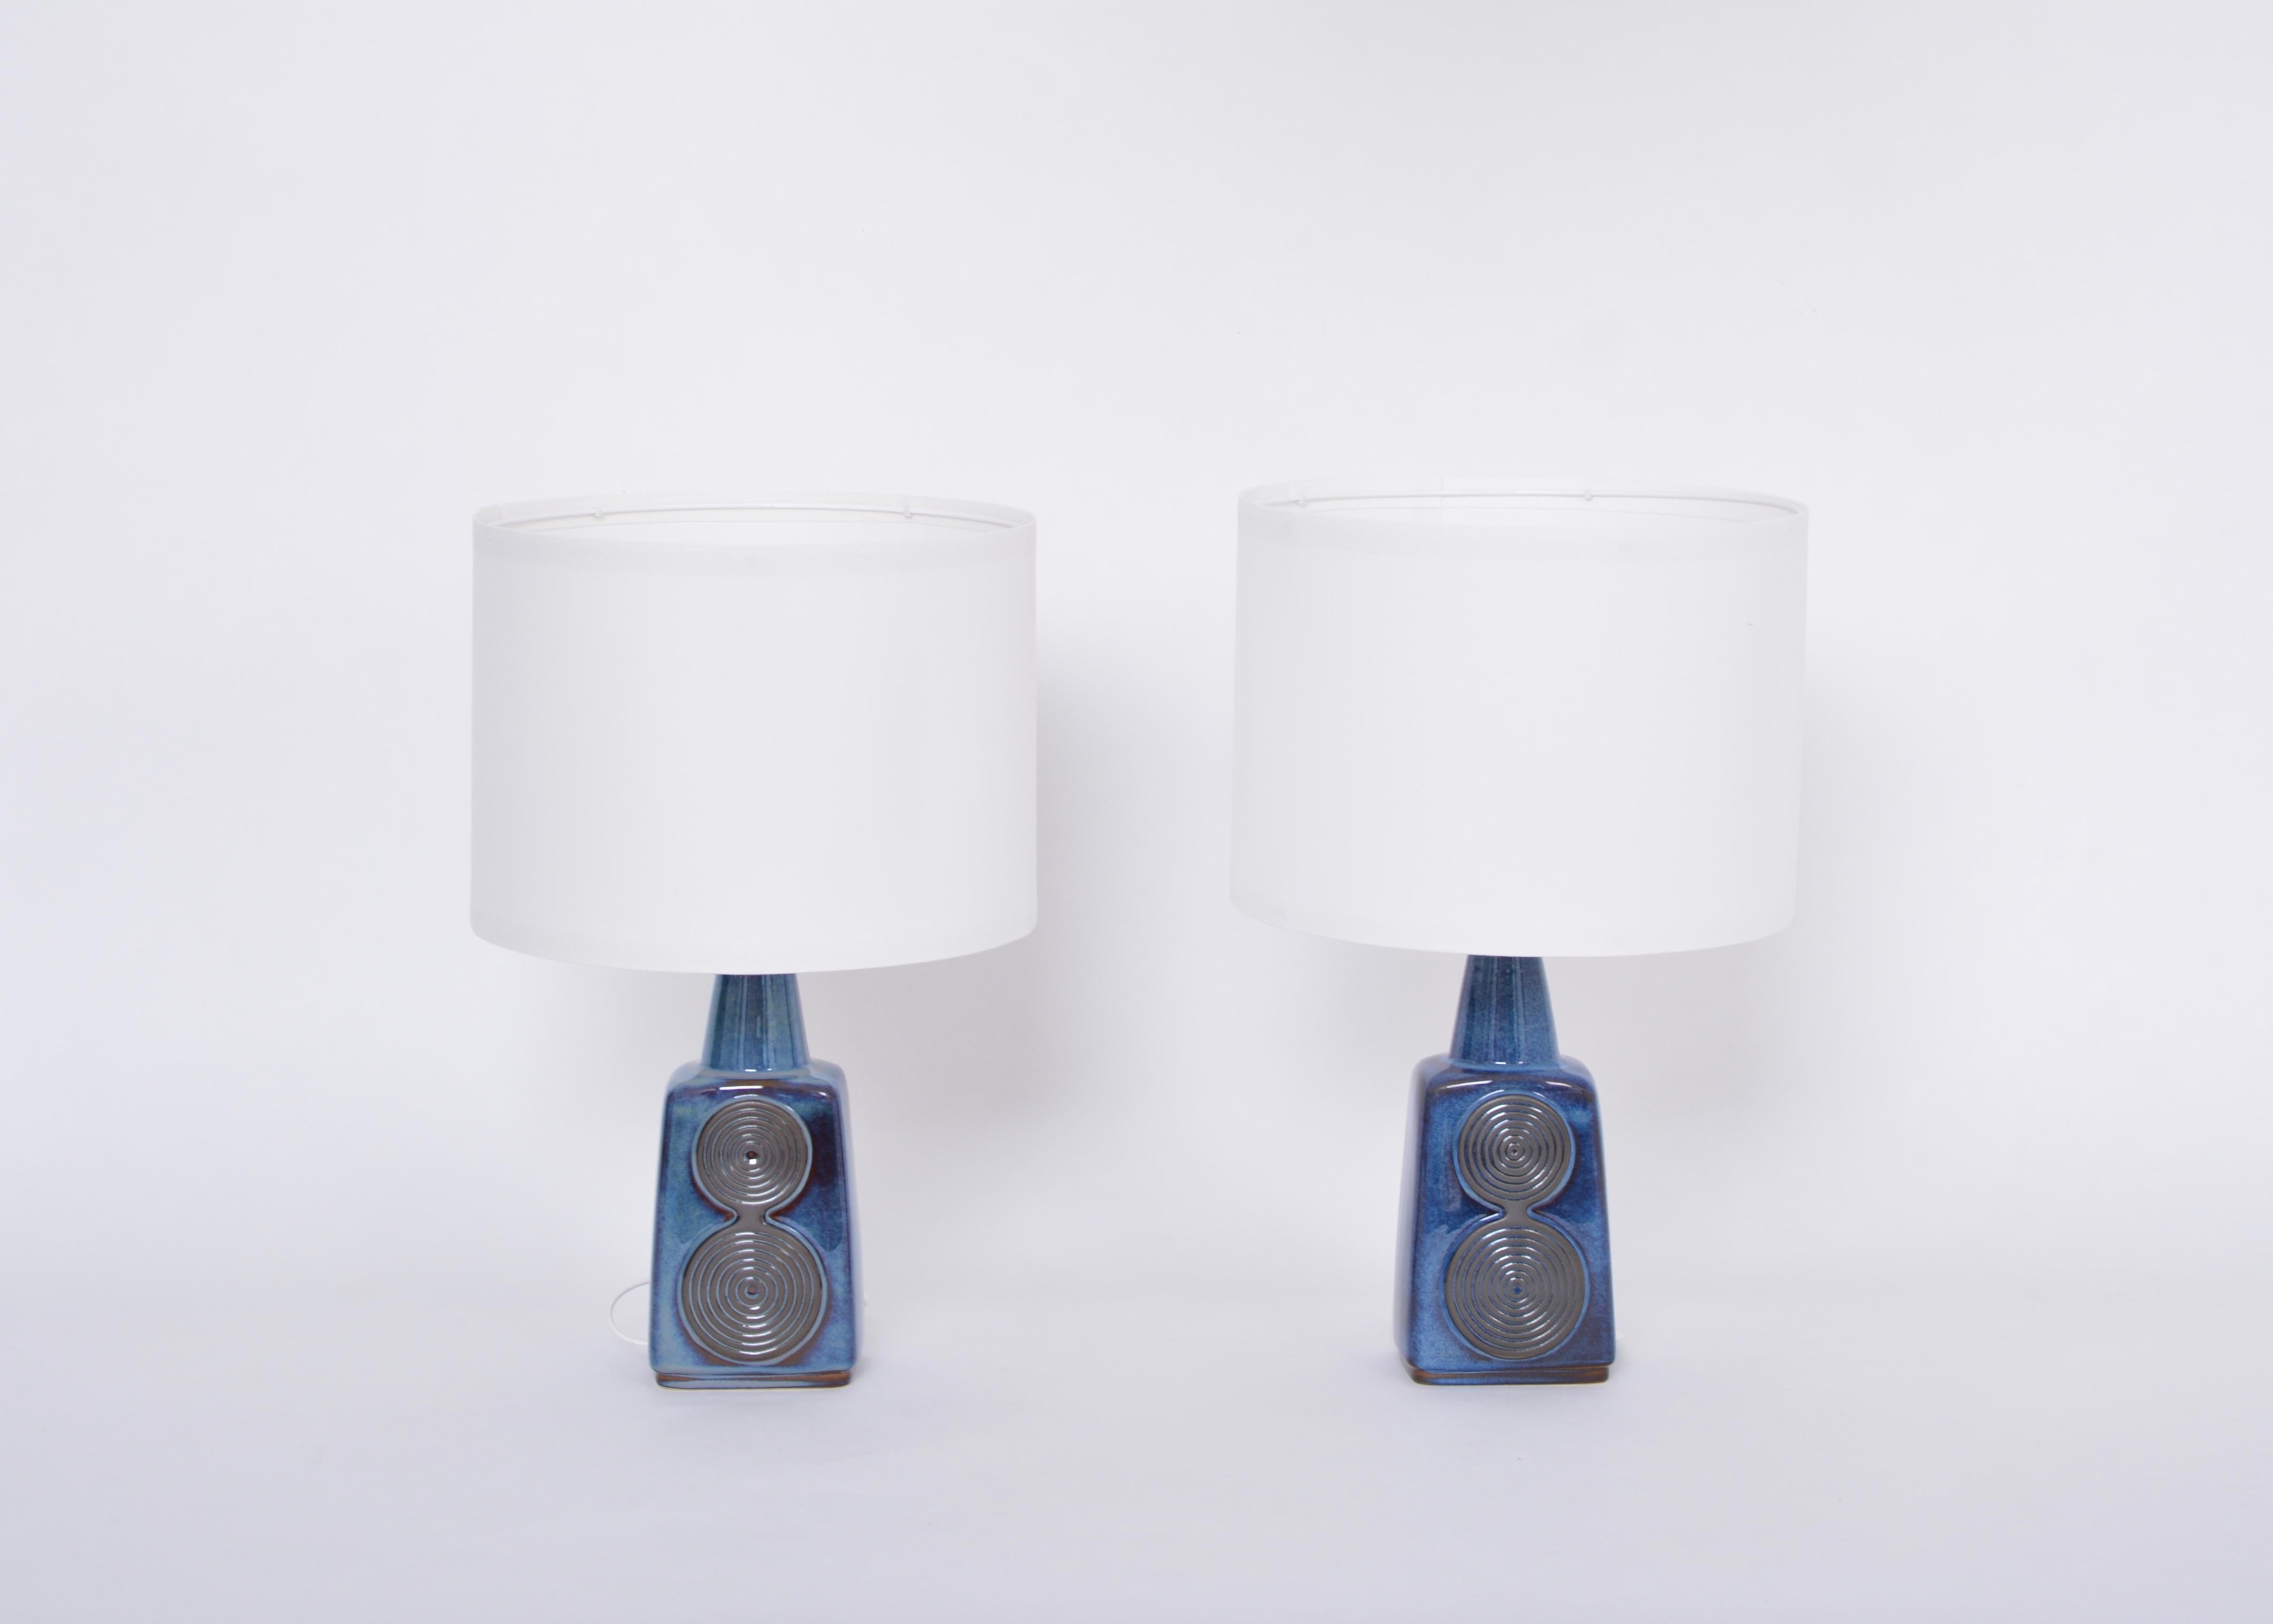 Paire de lampes de table bleues modèle 1097 par Einar Johansen pour Soholm

Paire de lampes de table en céramique conçues par Einar Johansen et produites par la société danoise Soholm Stentoj, probablement dans les années 1960. La base de la lampe